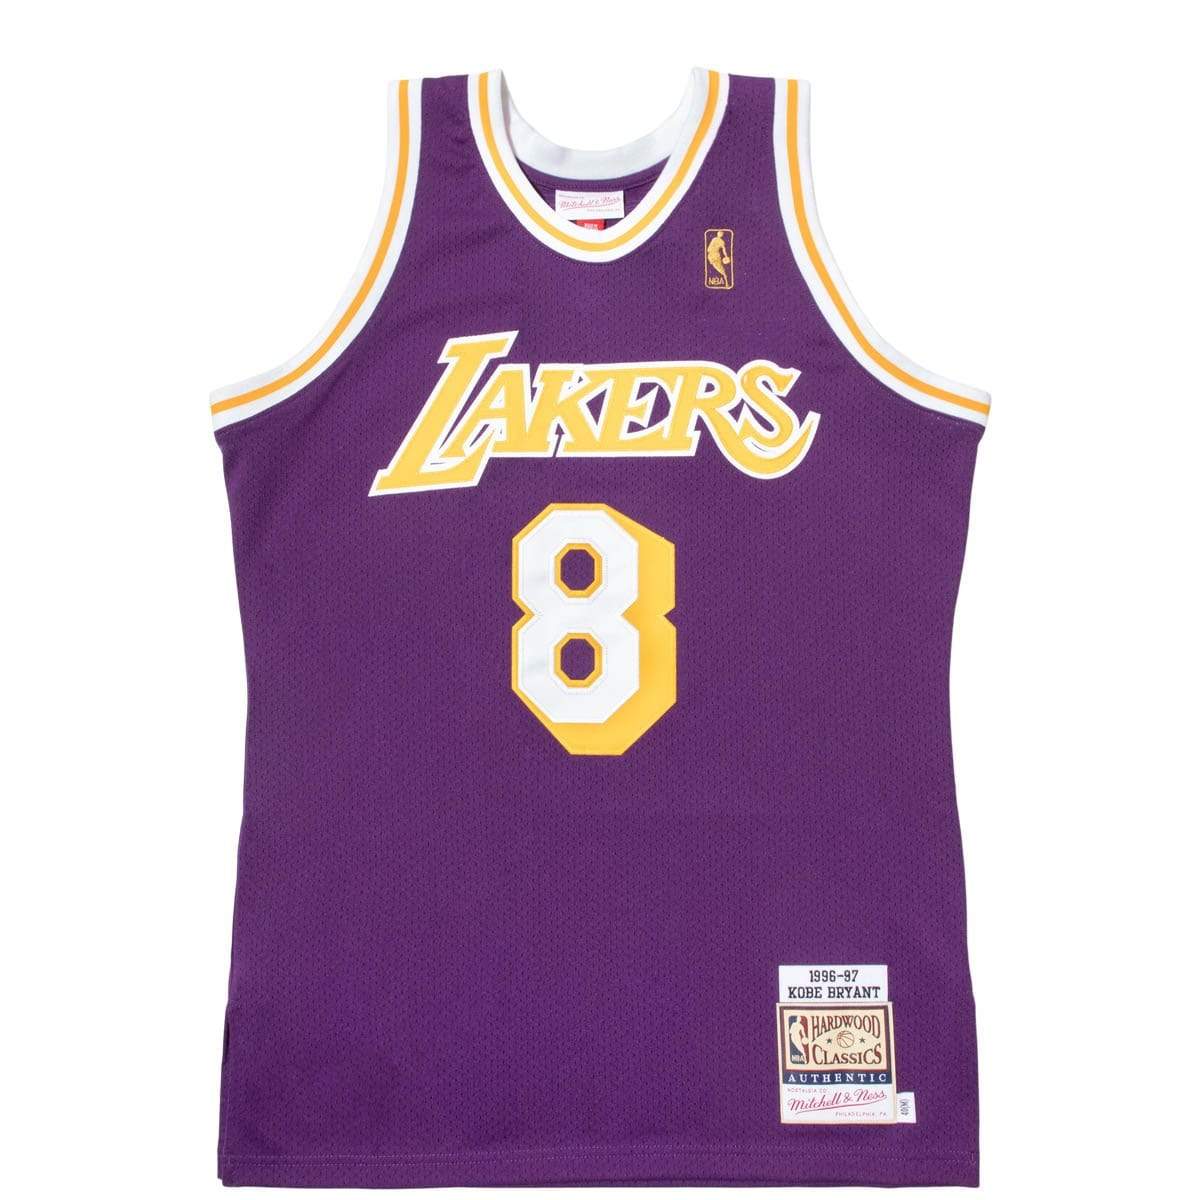 VTG Mitchell & Ness Los Angeles Lakers Kobe Bryant 1996-97 